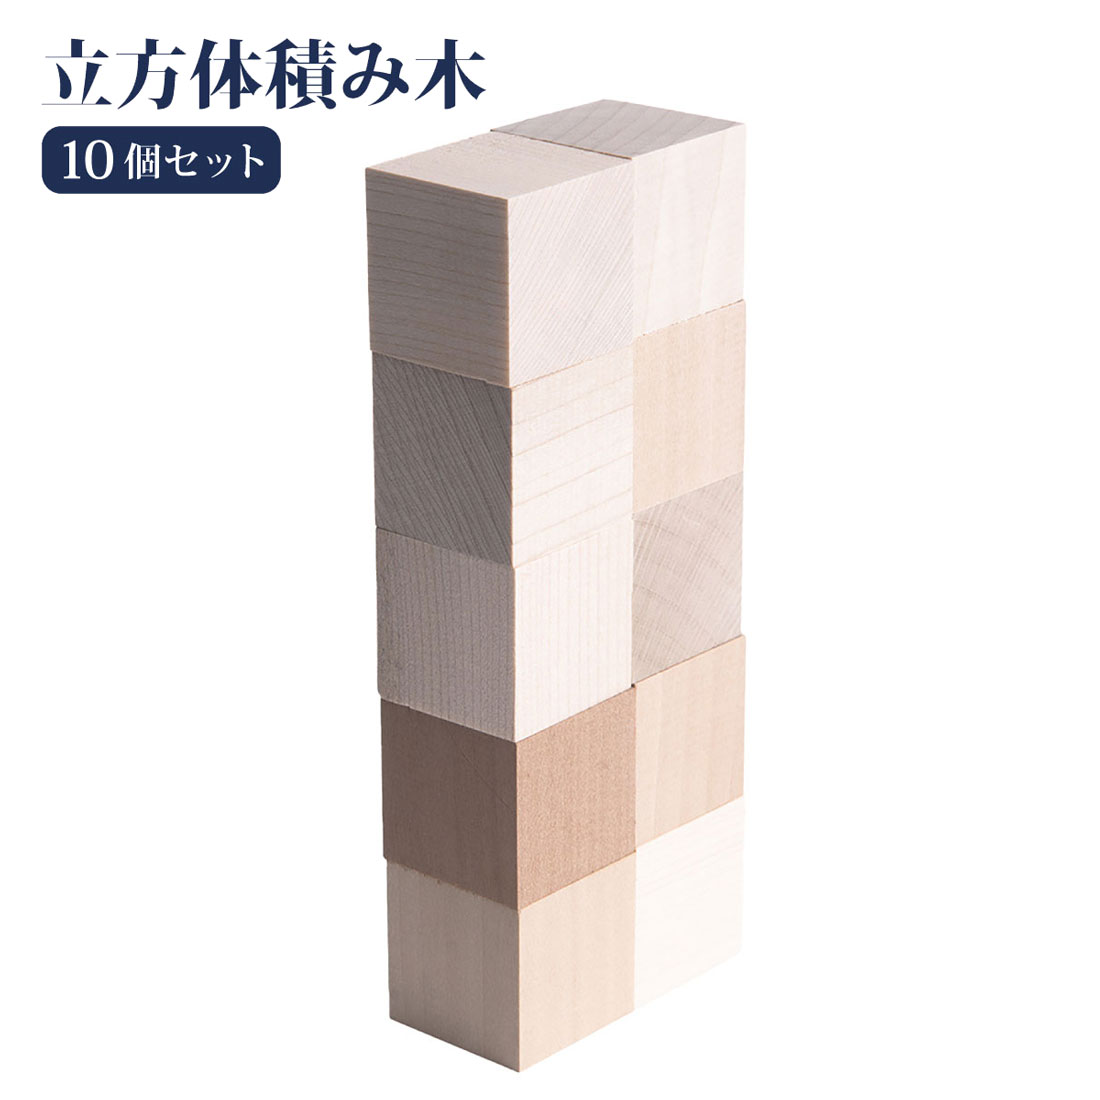 10個セット 立方体積み木 積みやすい 本物の木 ニキーチン 国産 日本製 お受験 幼児教育 教具 知育玩具 角積木 空間…